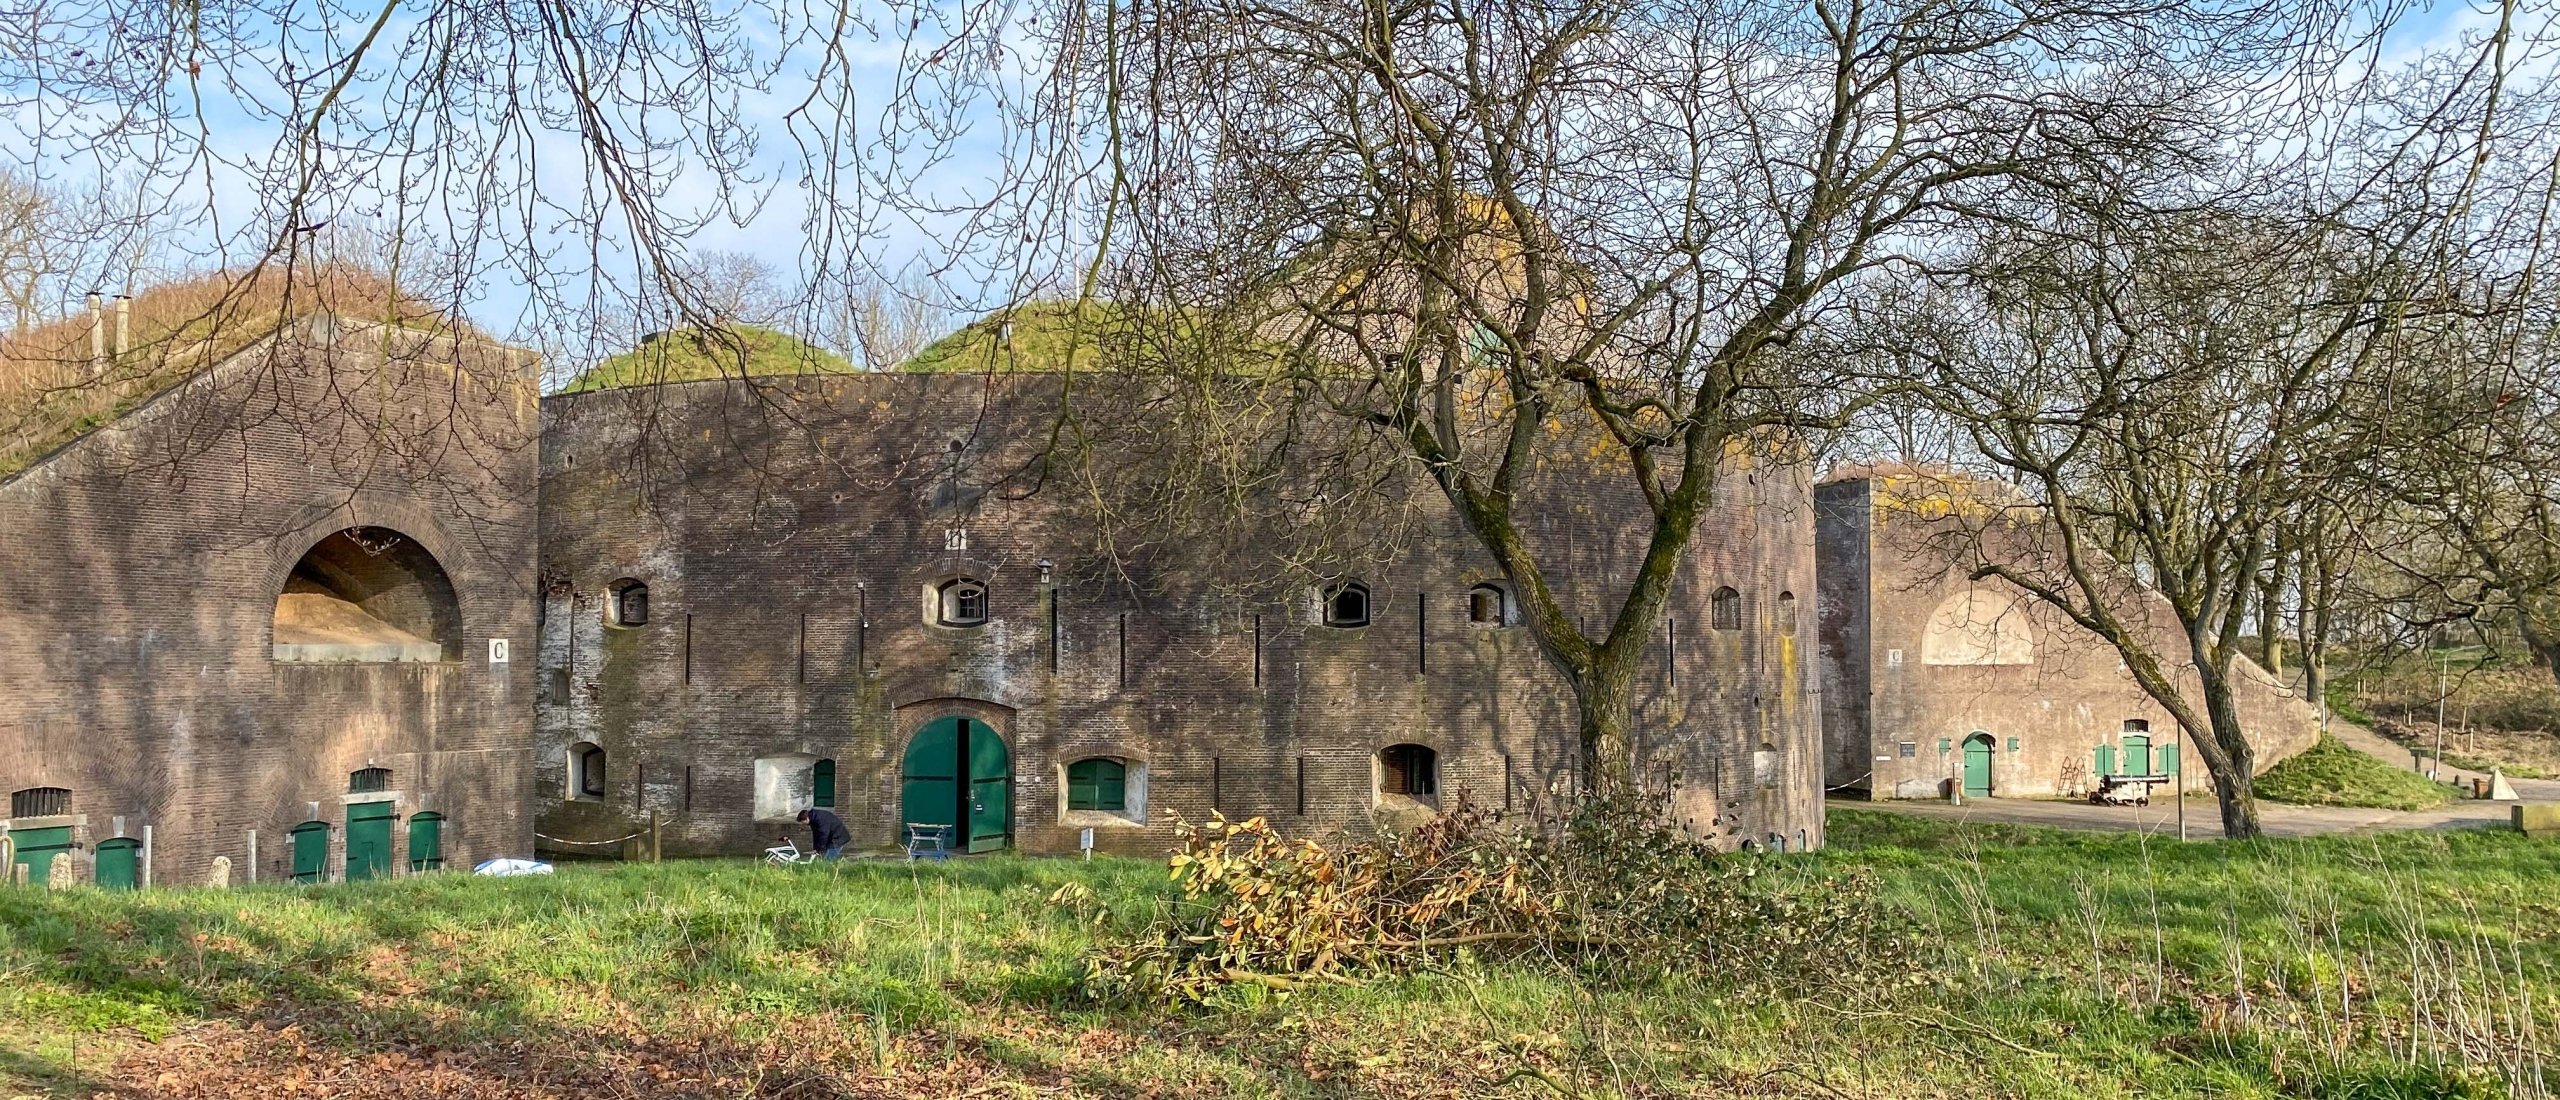 Camperplaatsen bij een fort in Nederland